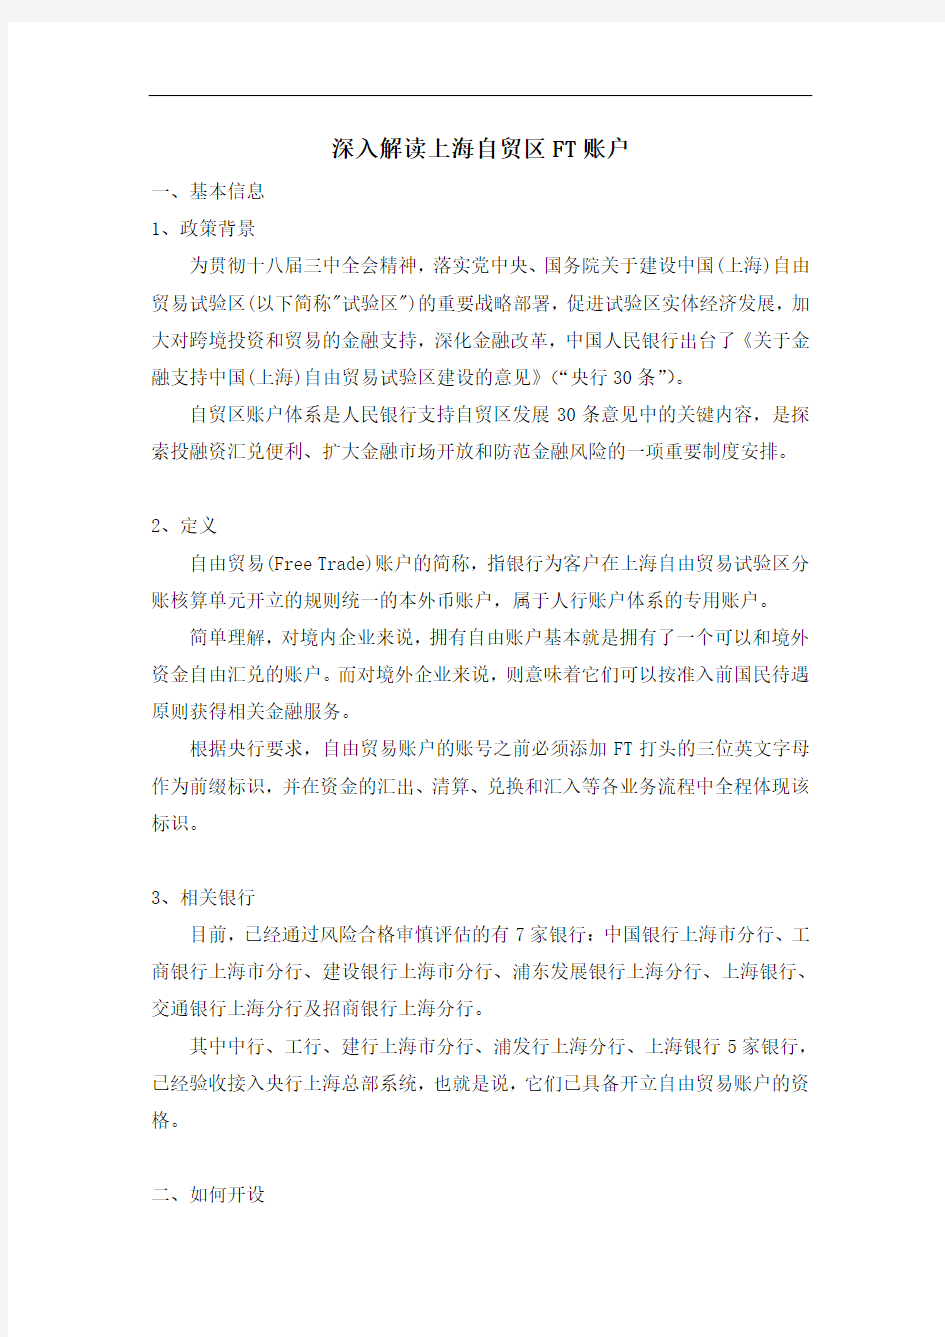 最新深入解读上海自贸区FT账户教学内容